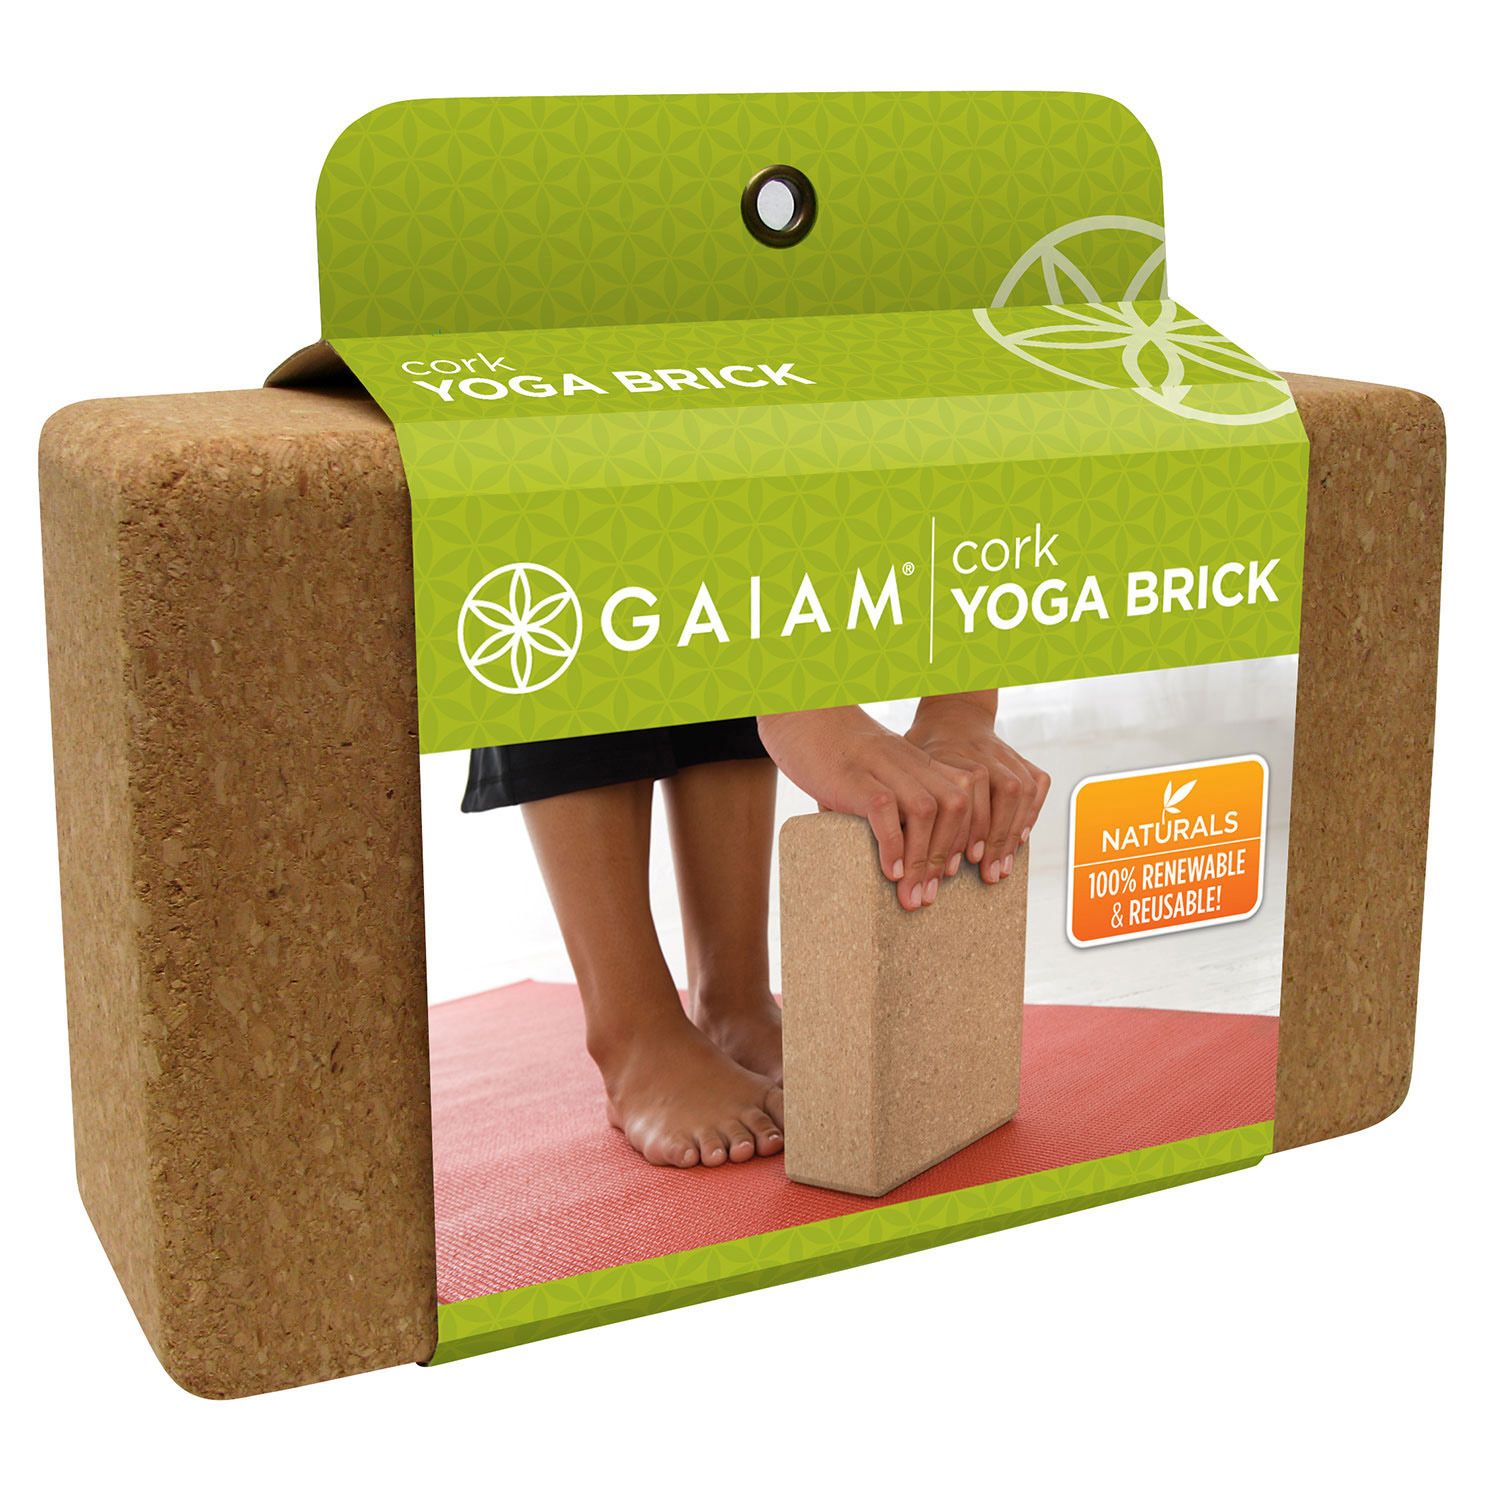 gaiam yoga brick